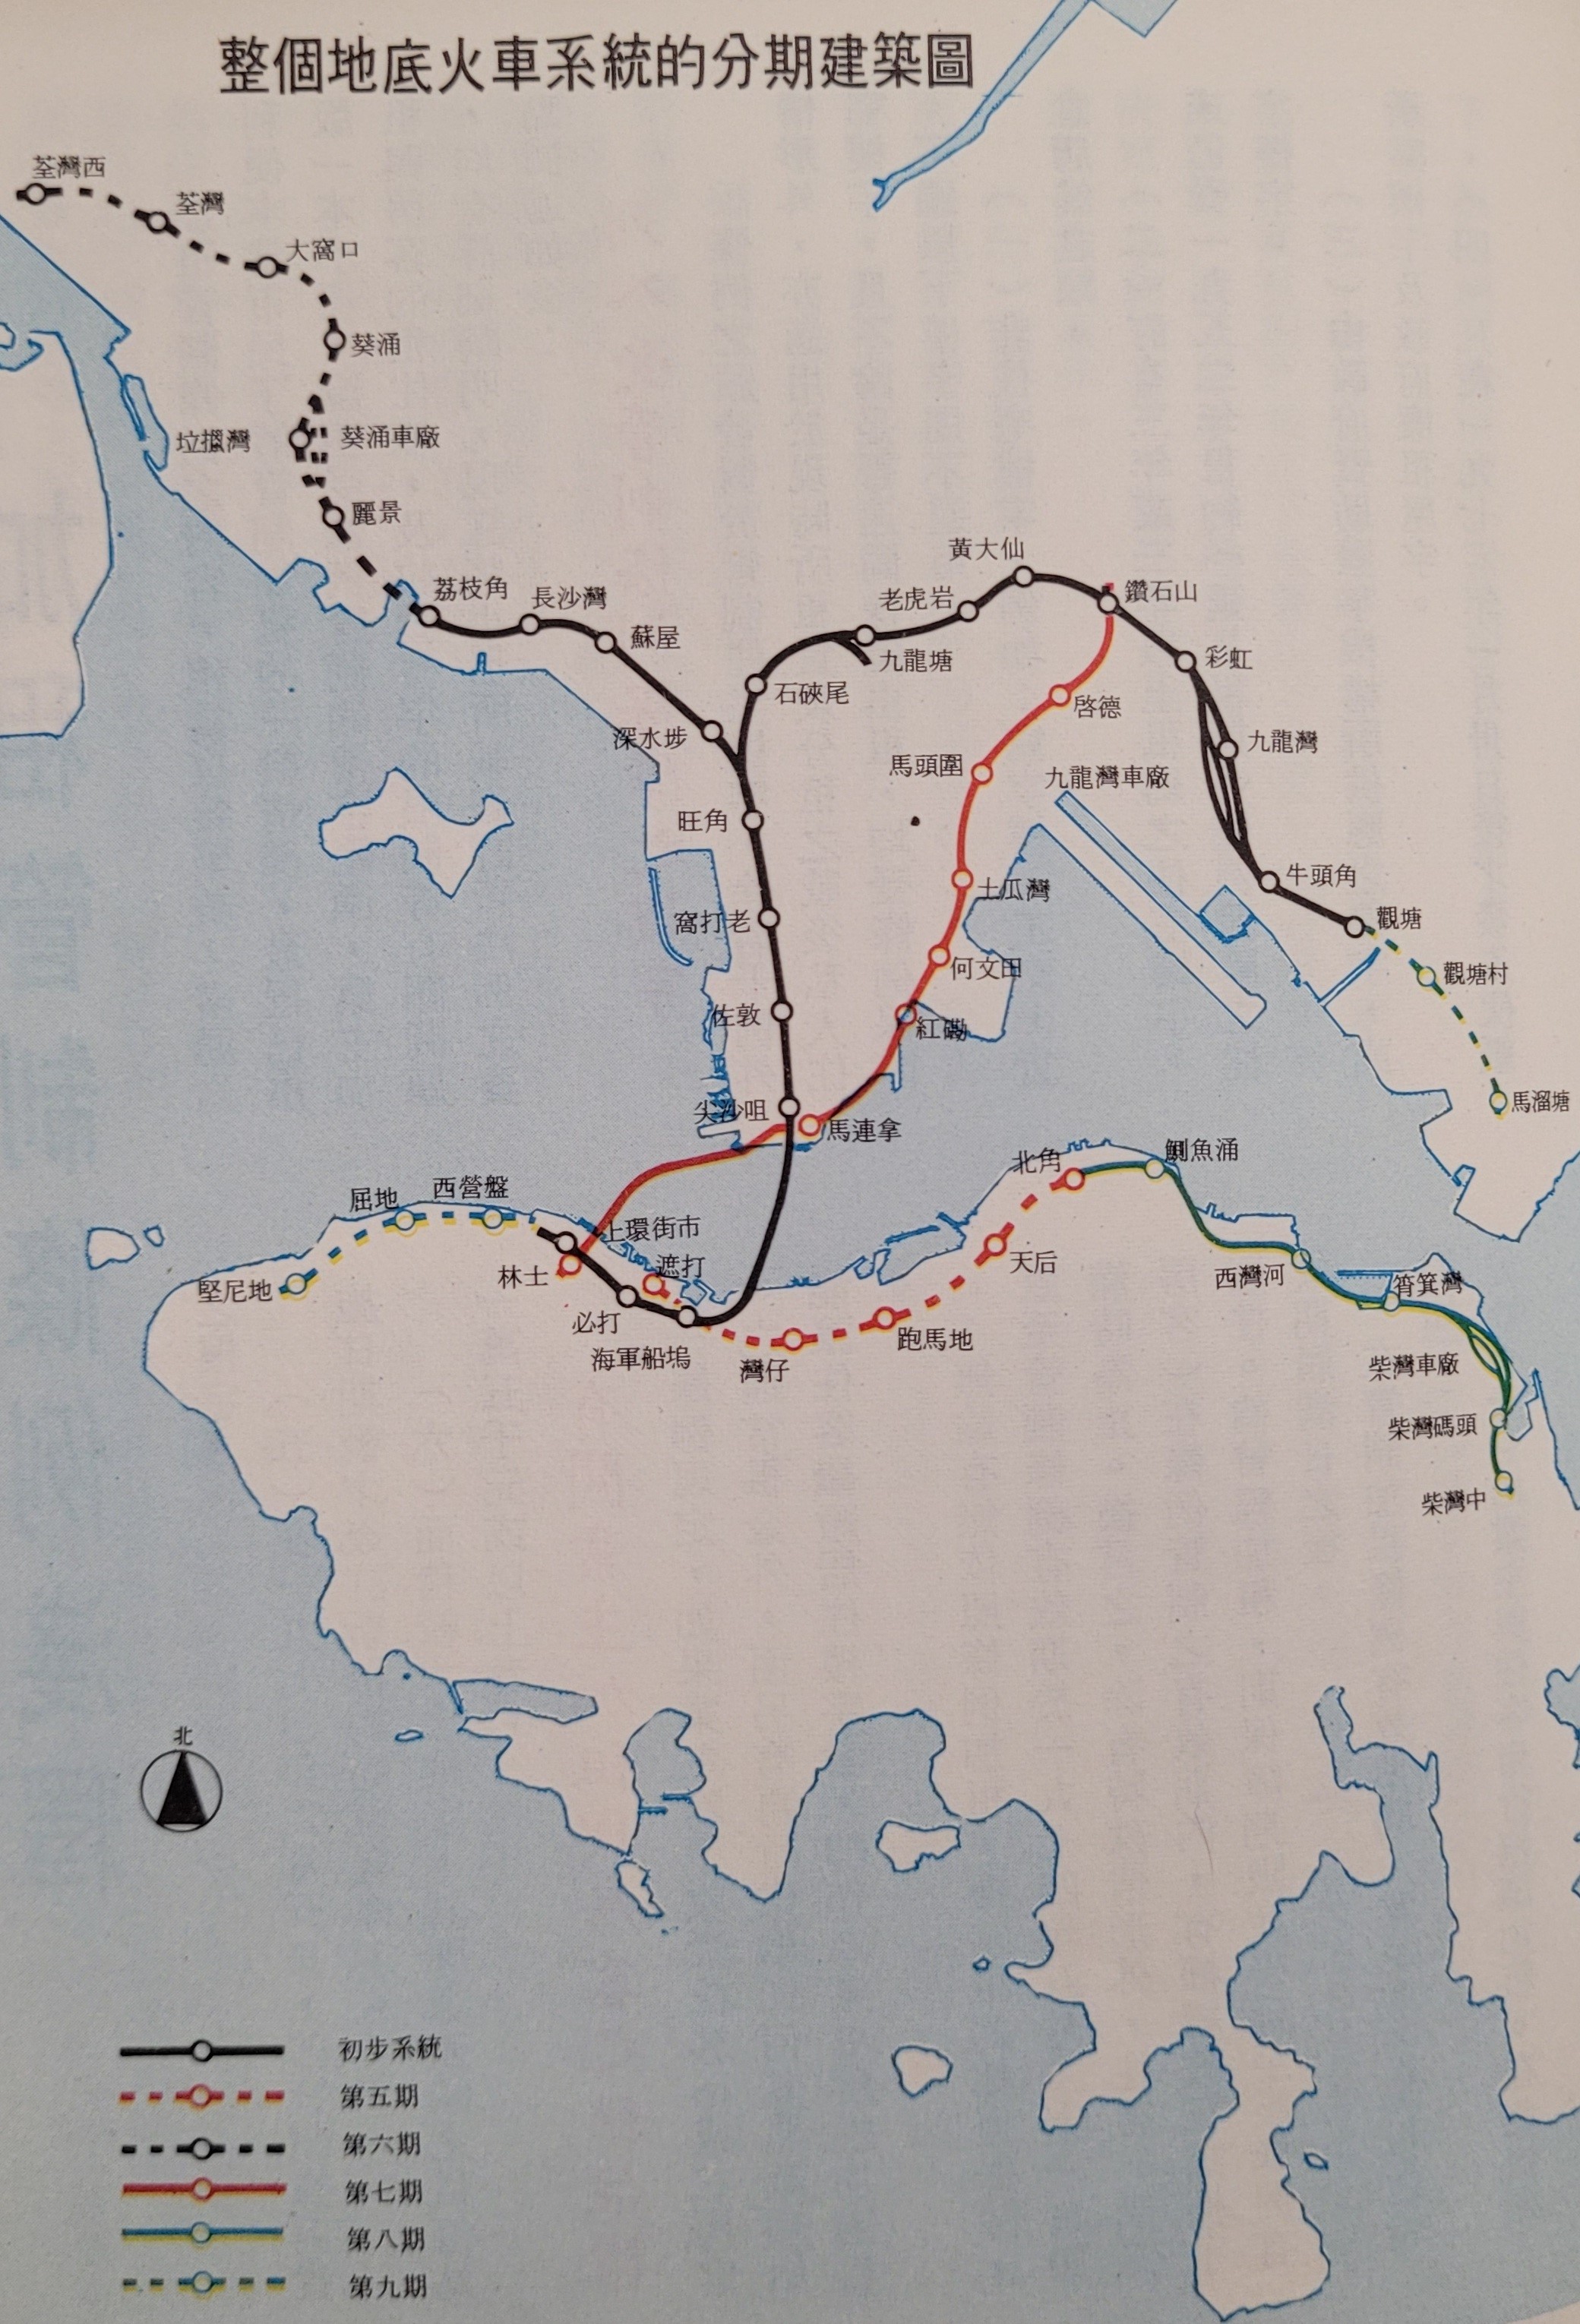 整個地底火車系統的分期建築圖。（圖片來源：《香港地產簡訊》第14期）